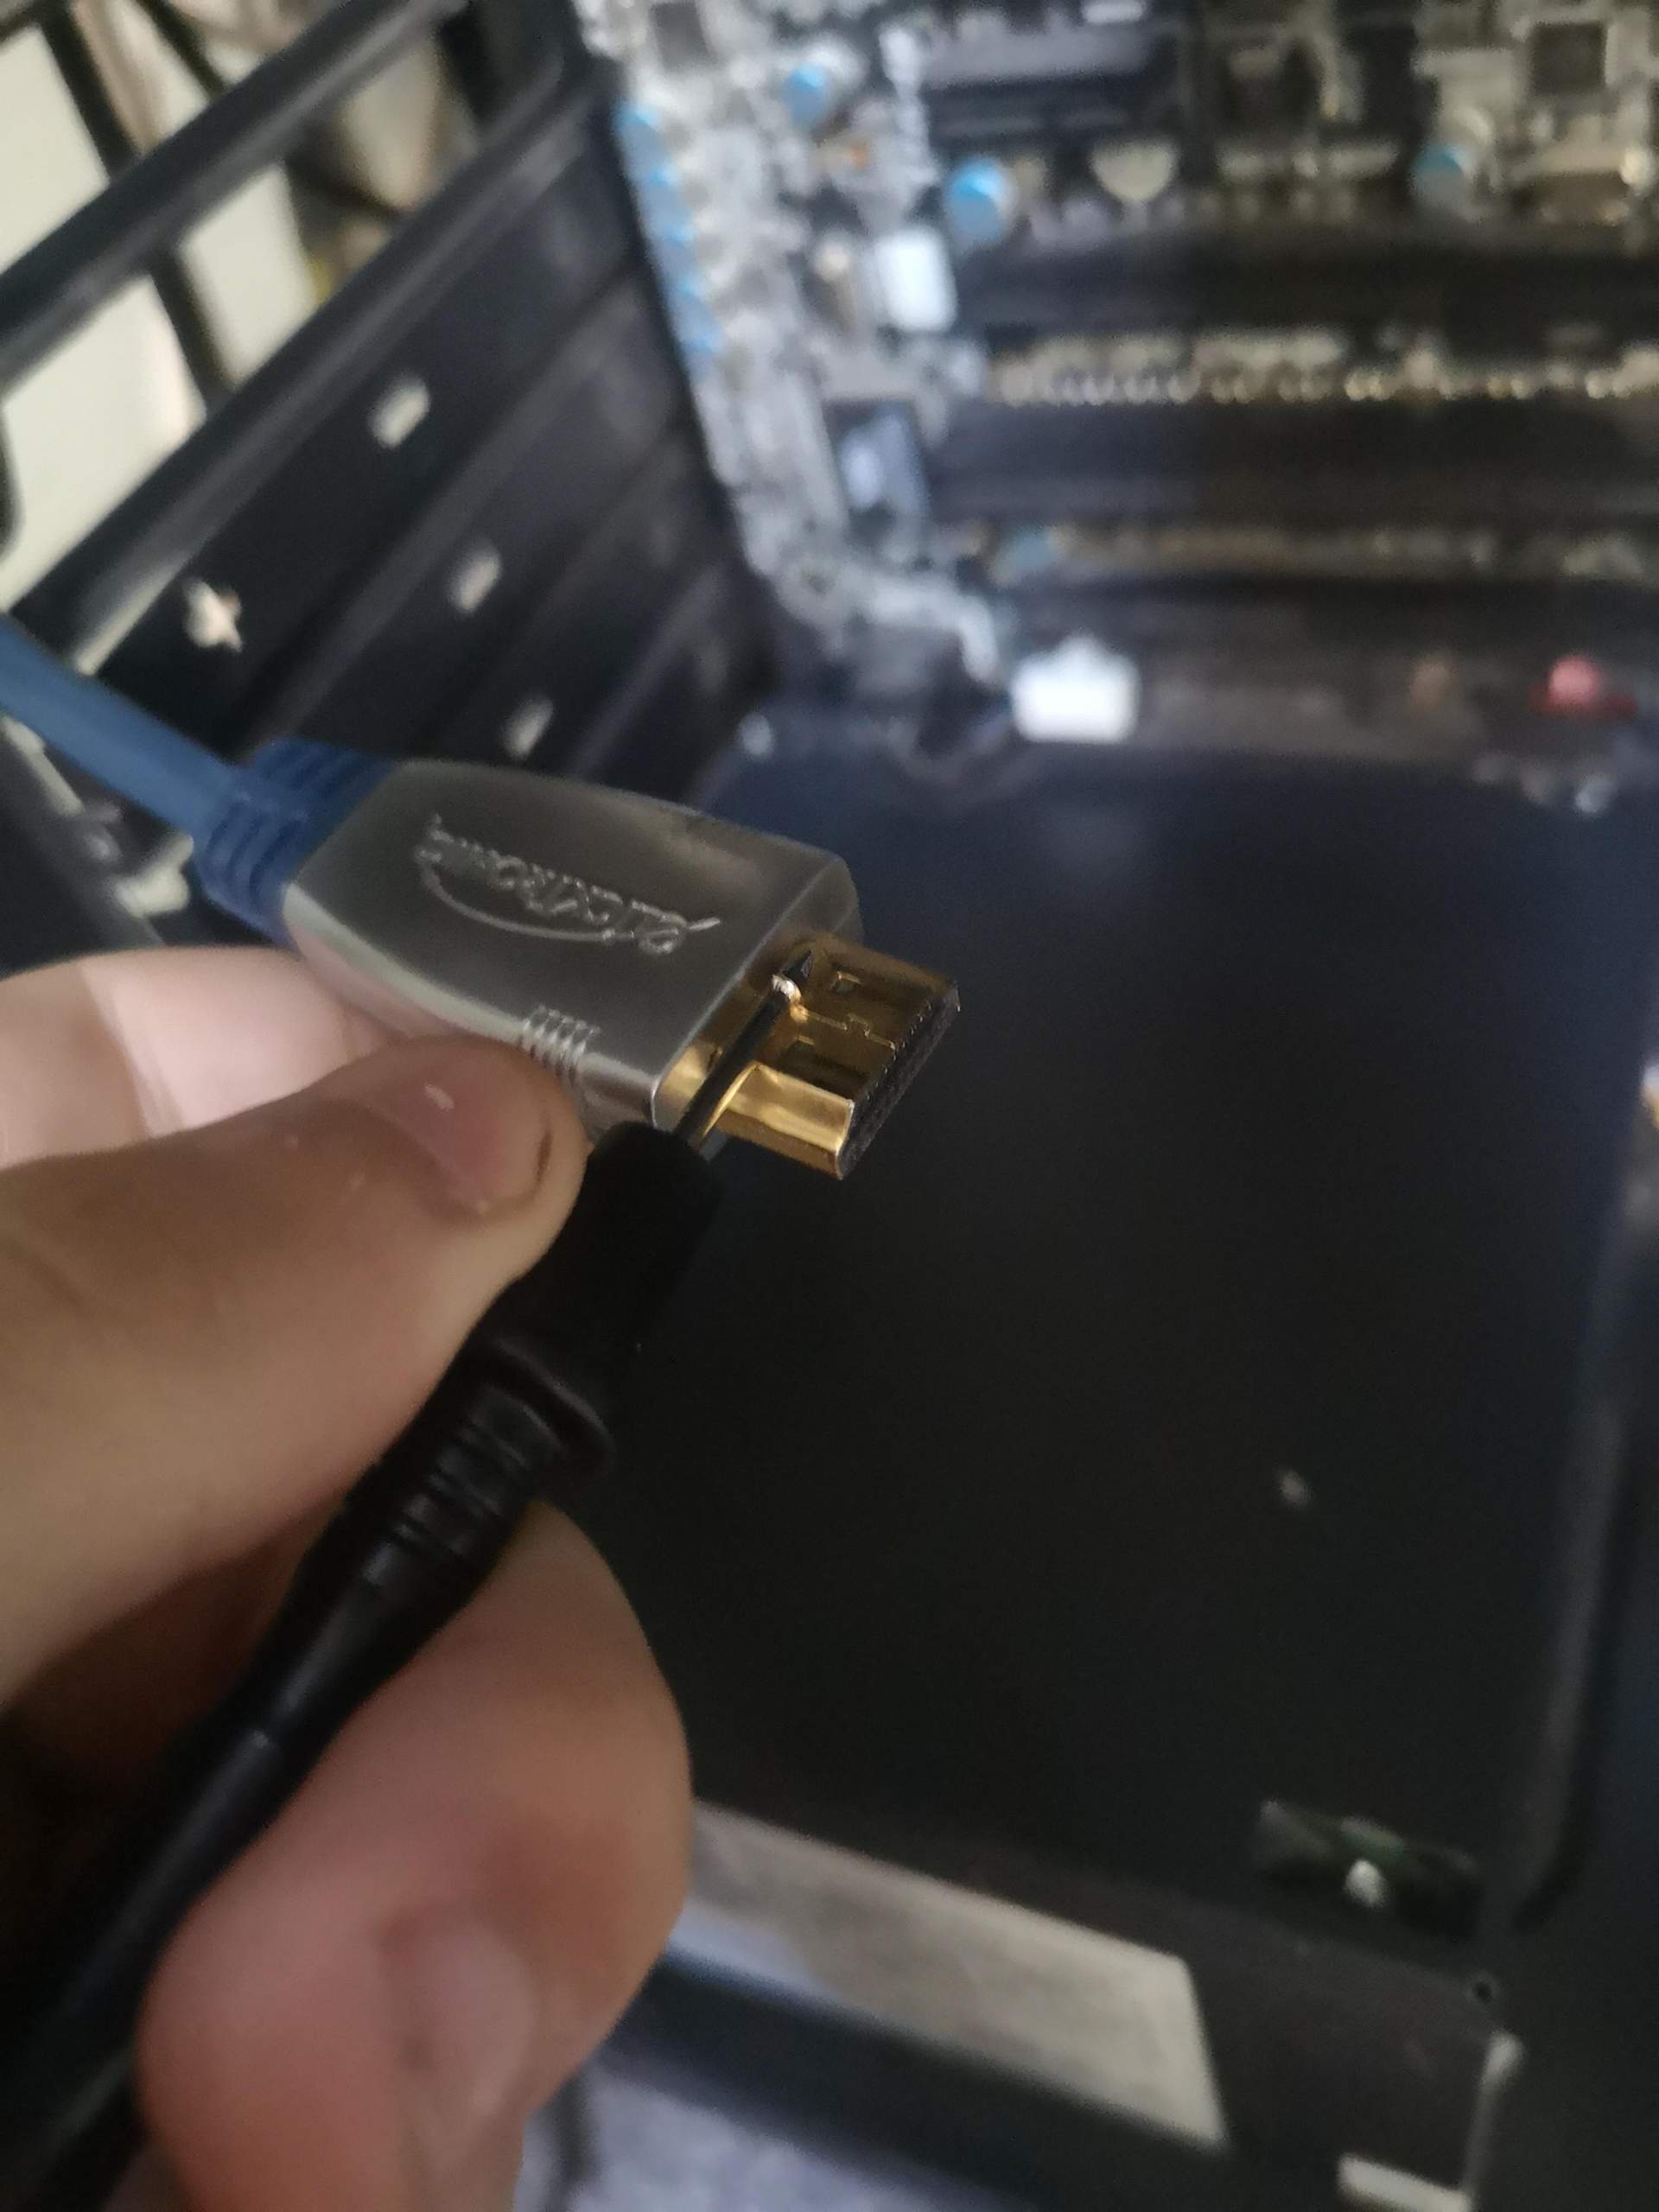 Problem HDMI Kabel Kontakt mit Heizung : r/Elektroinstallation